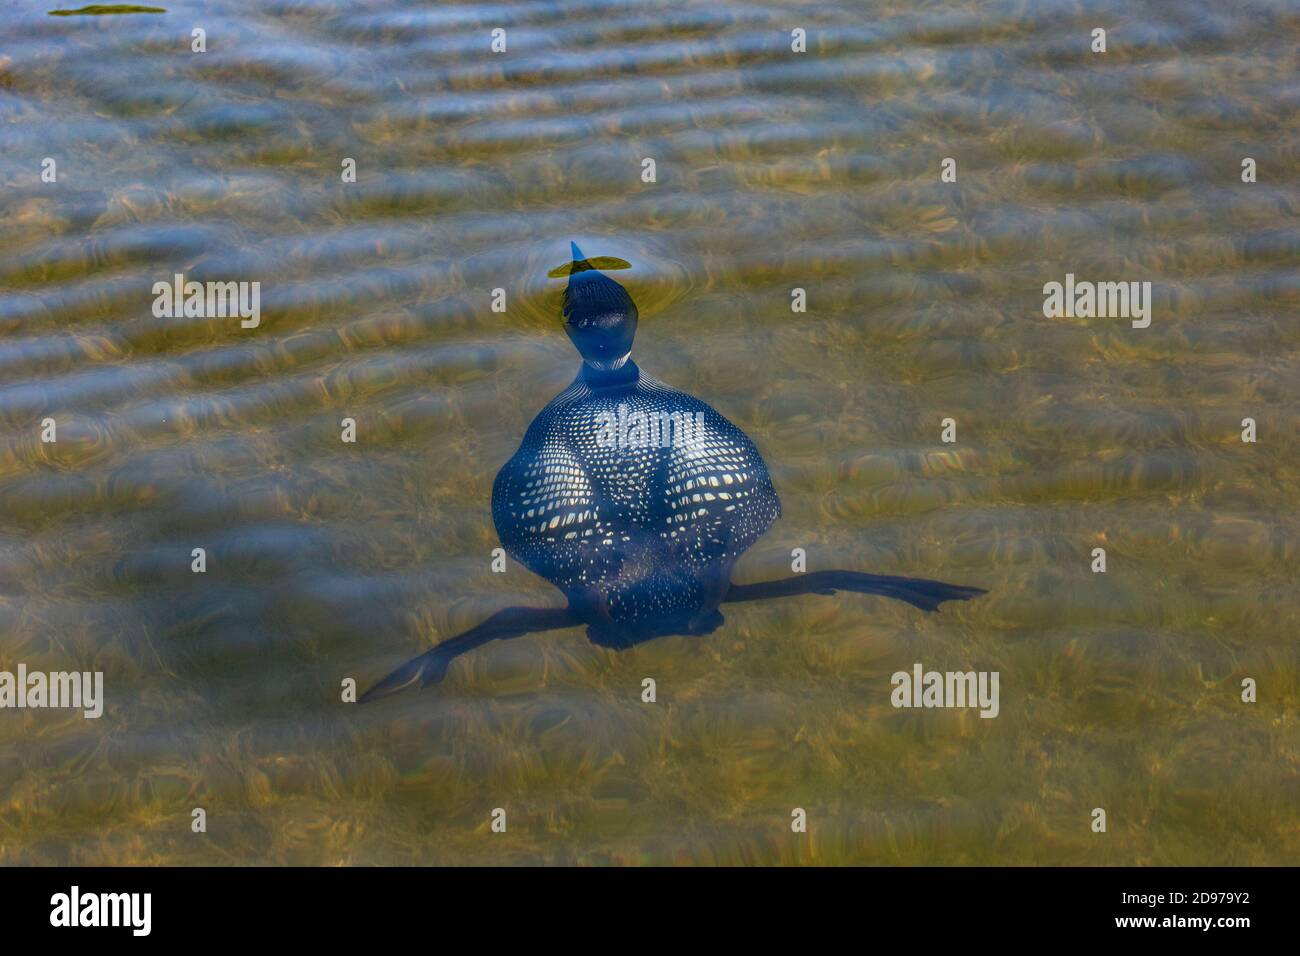 Loon común (Gavia immer), en un lago, buceo submarino, Michigan, Estados Unidos Foto de stock